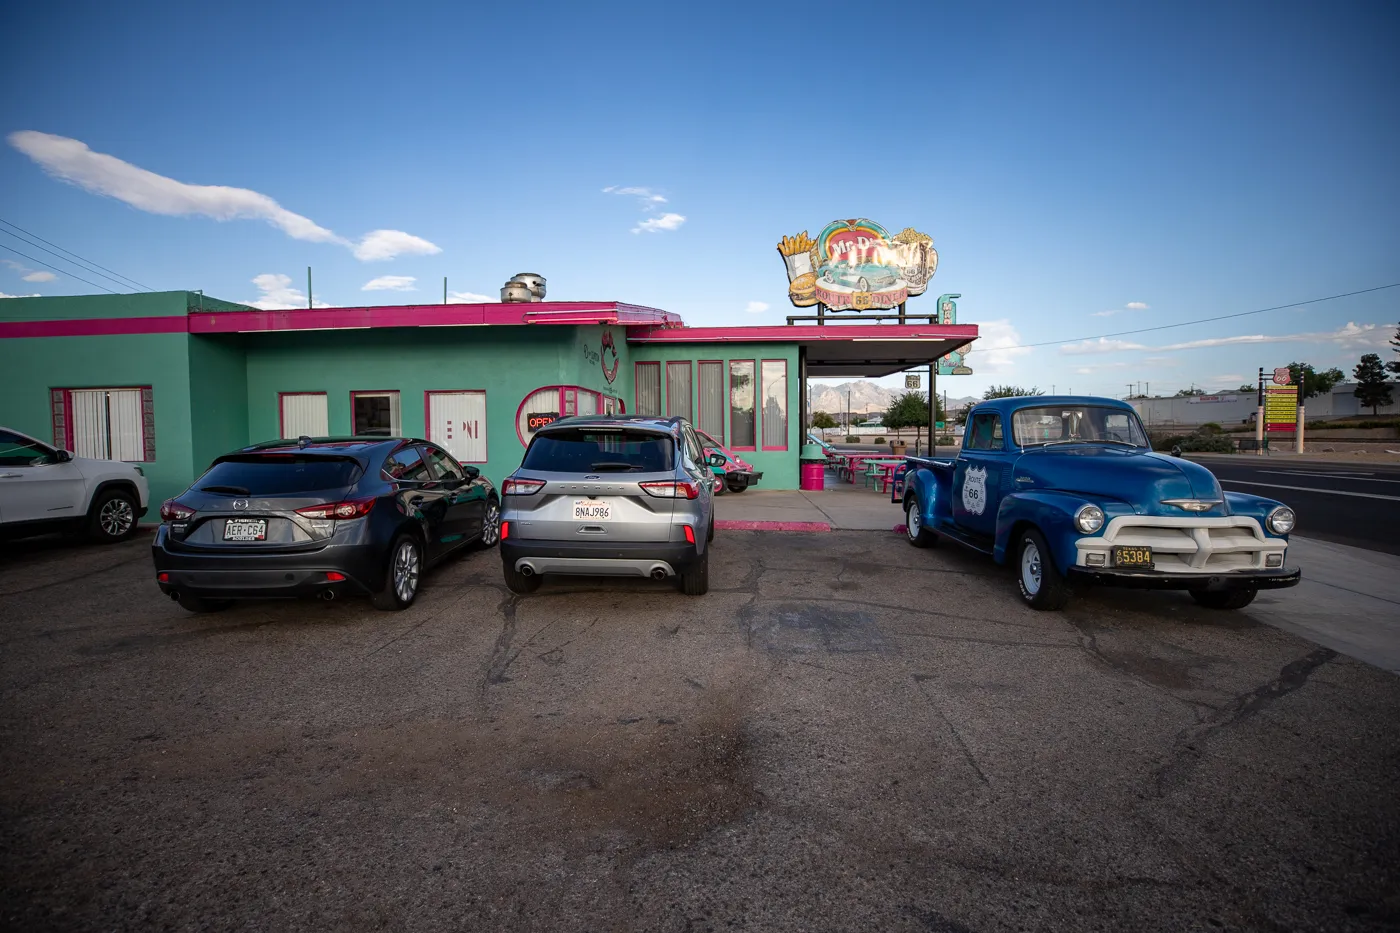 Mr D'z Route 66 Diner in Kingman, Arizona